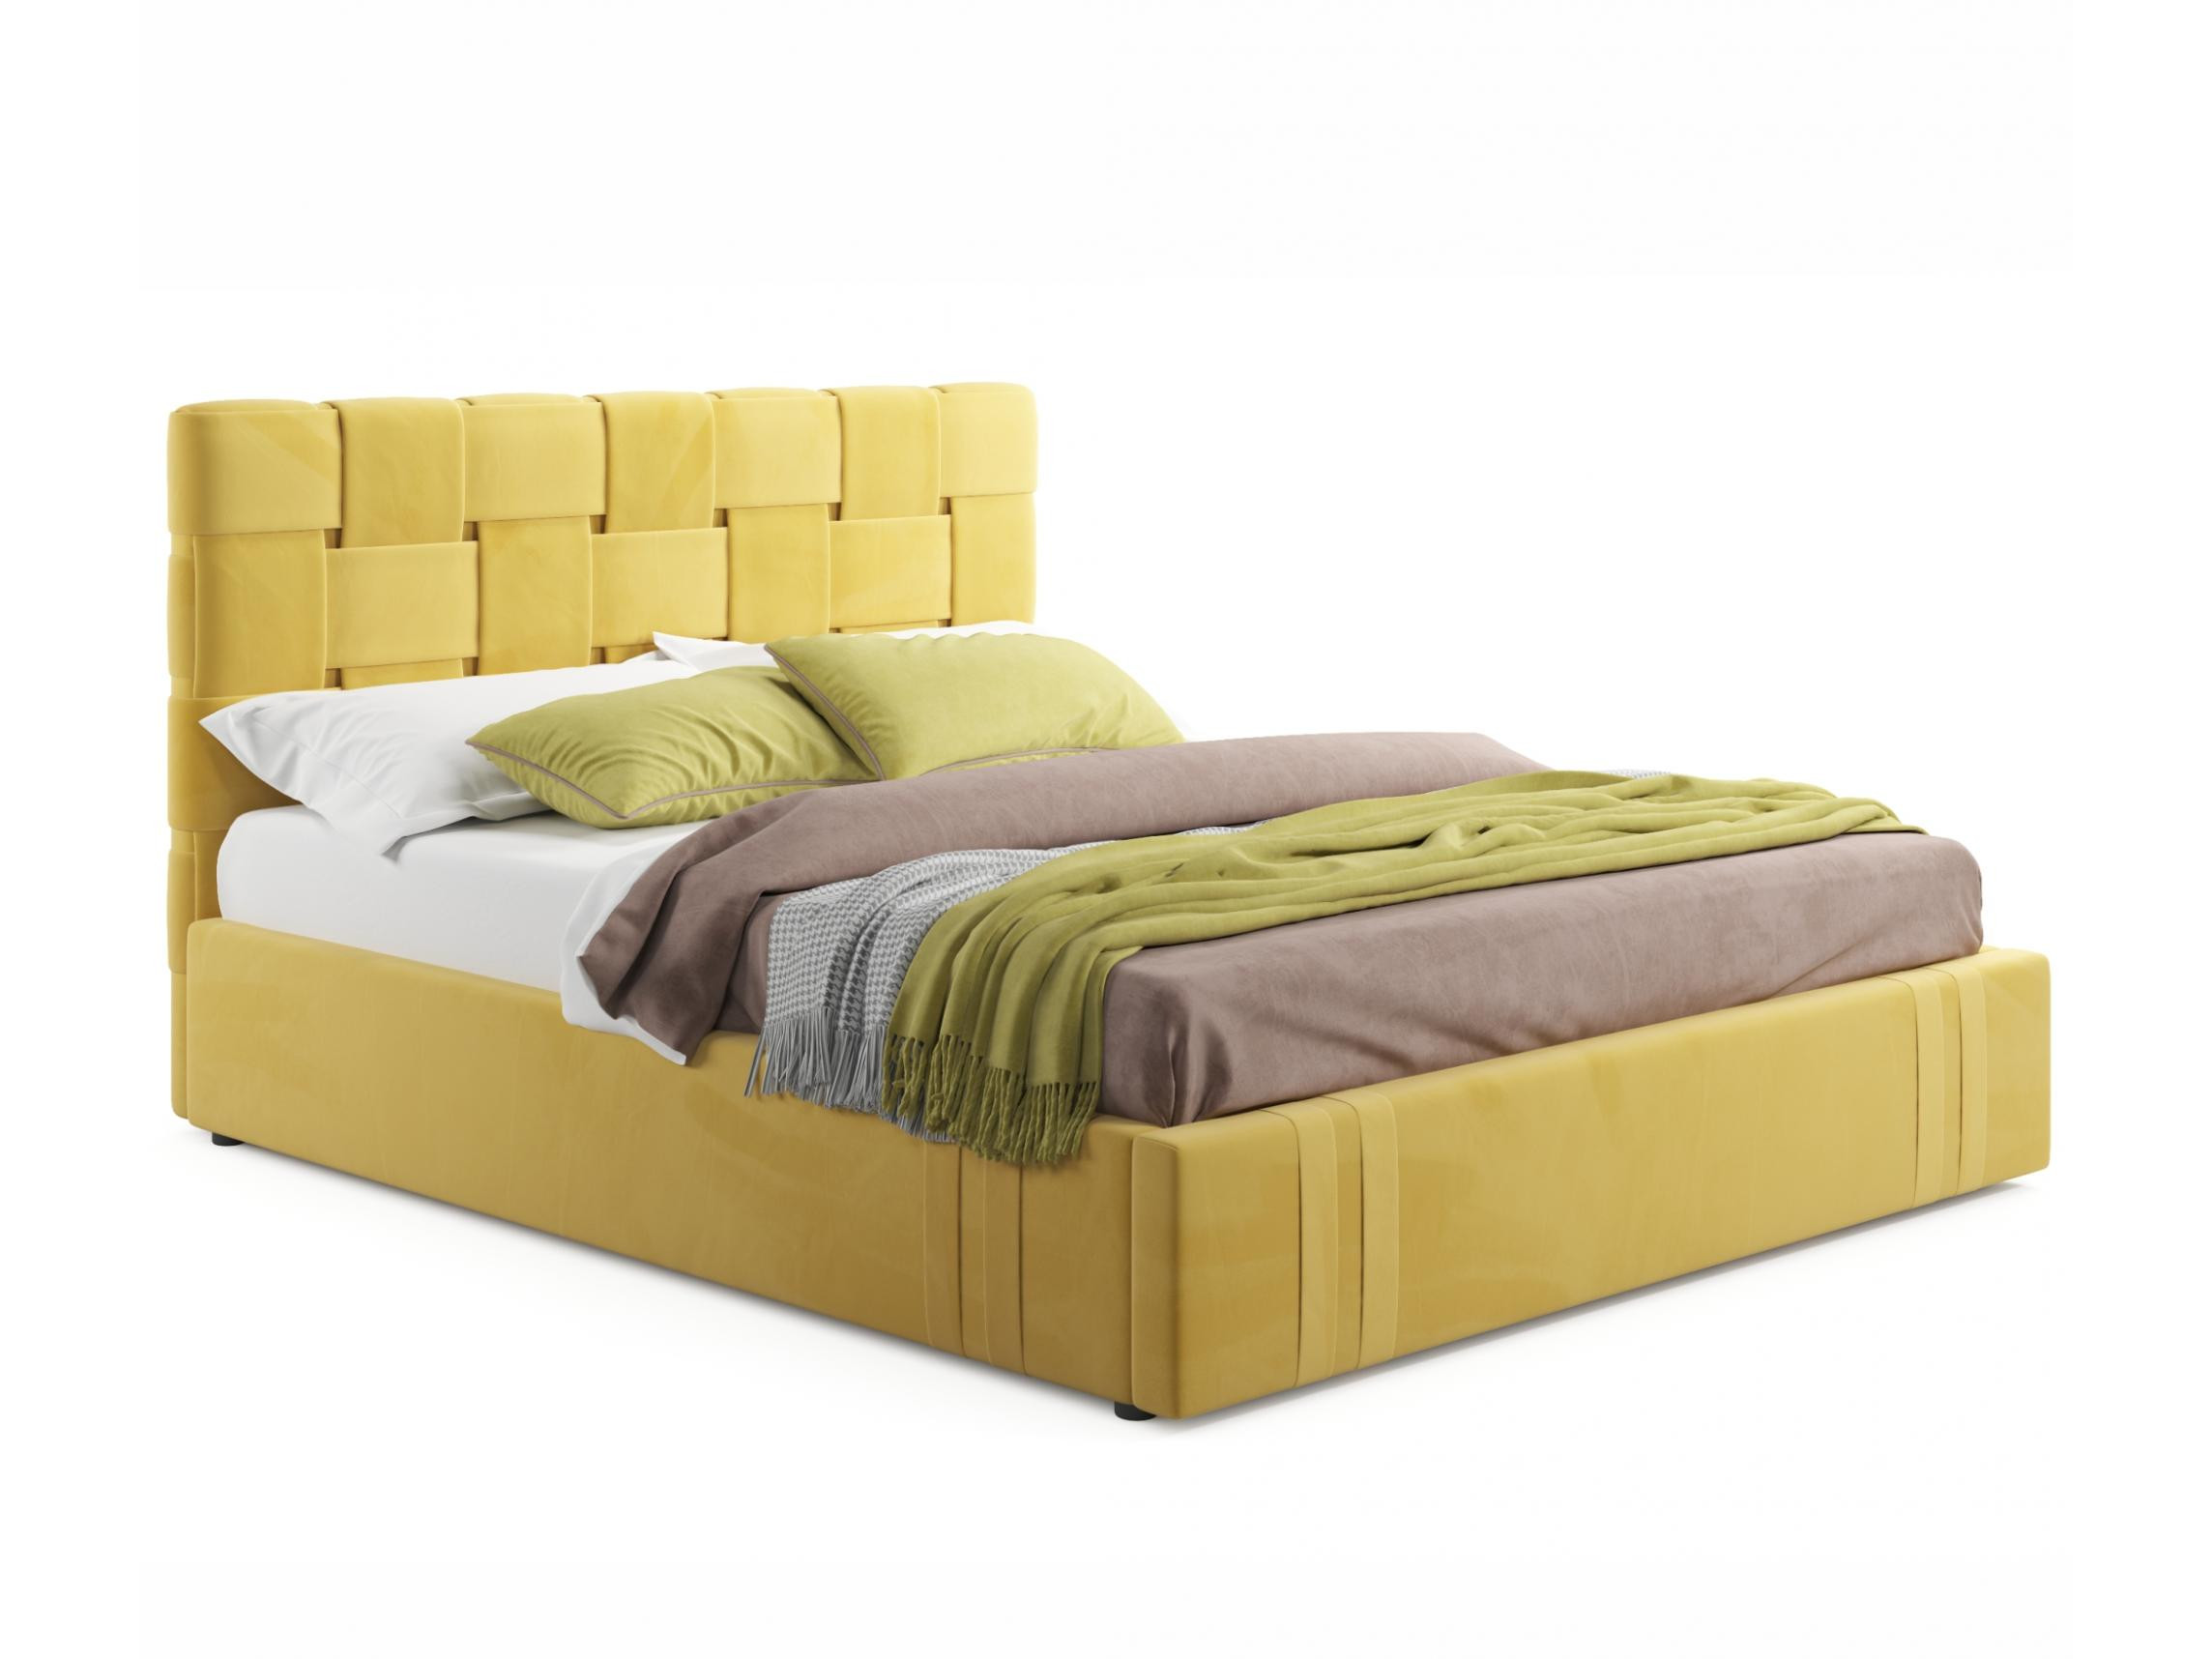 Мягкая кровать Tiffany 1600 желтая с подъемным механизмом с матрасом АСТРА желтый, Желтый, Велюр, ДСП мягкая кровать tiffany 1600 желтая с подъемным механизмом желтый желтый велюр дсп